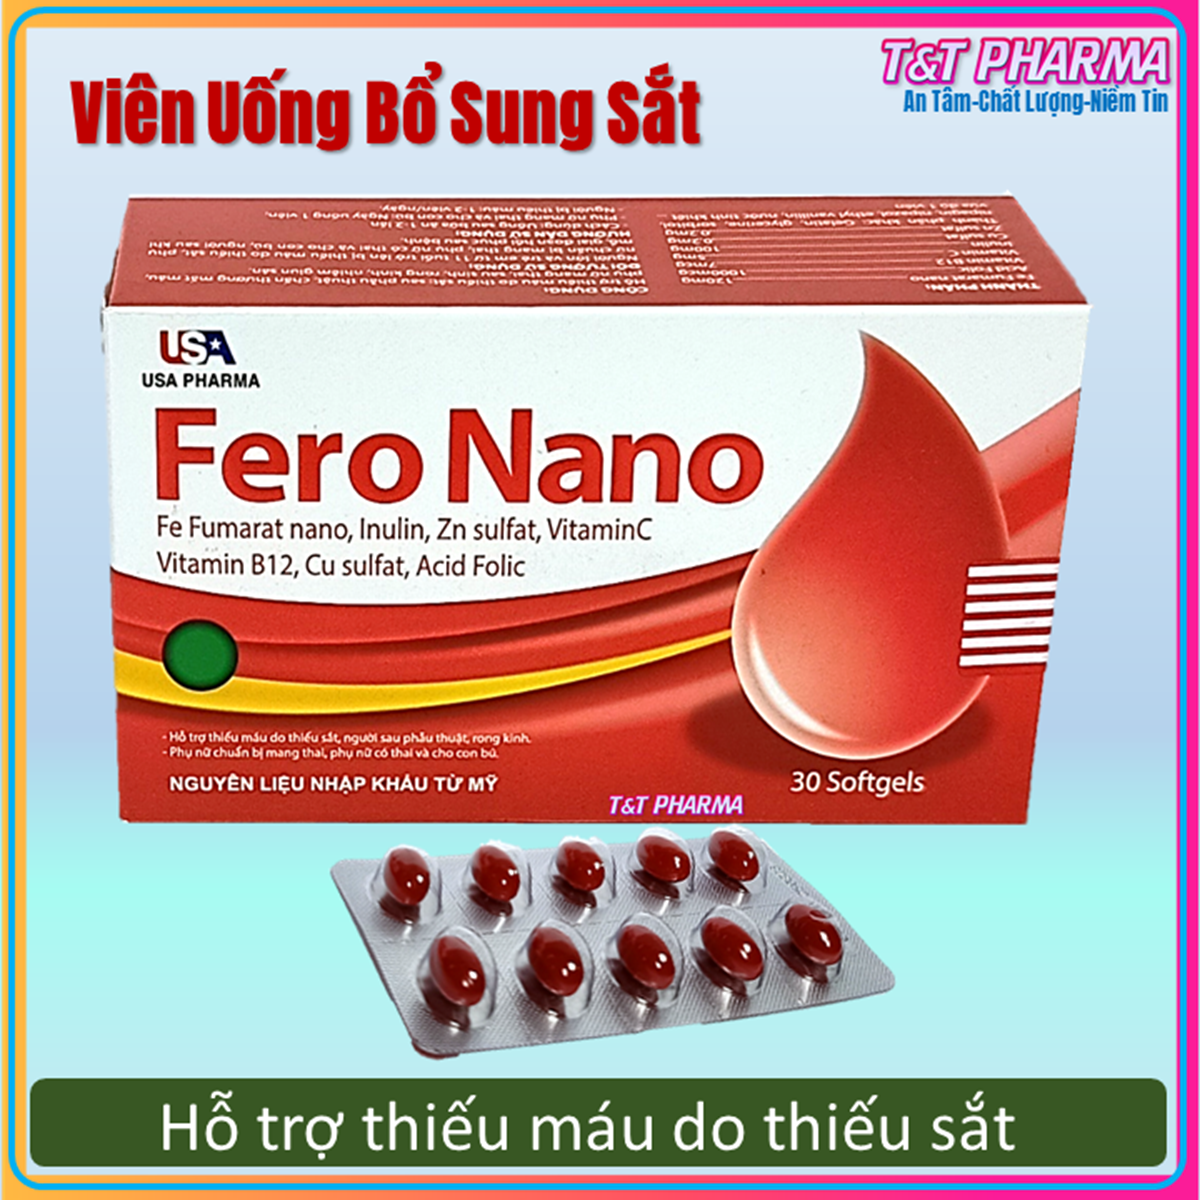 Viên uống Fero Nano bổ sung Sắt, Acid Folic cho người thiếu máu não